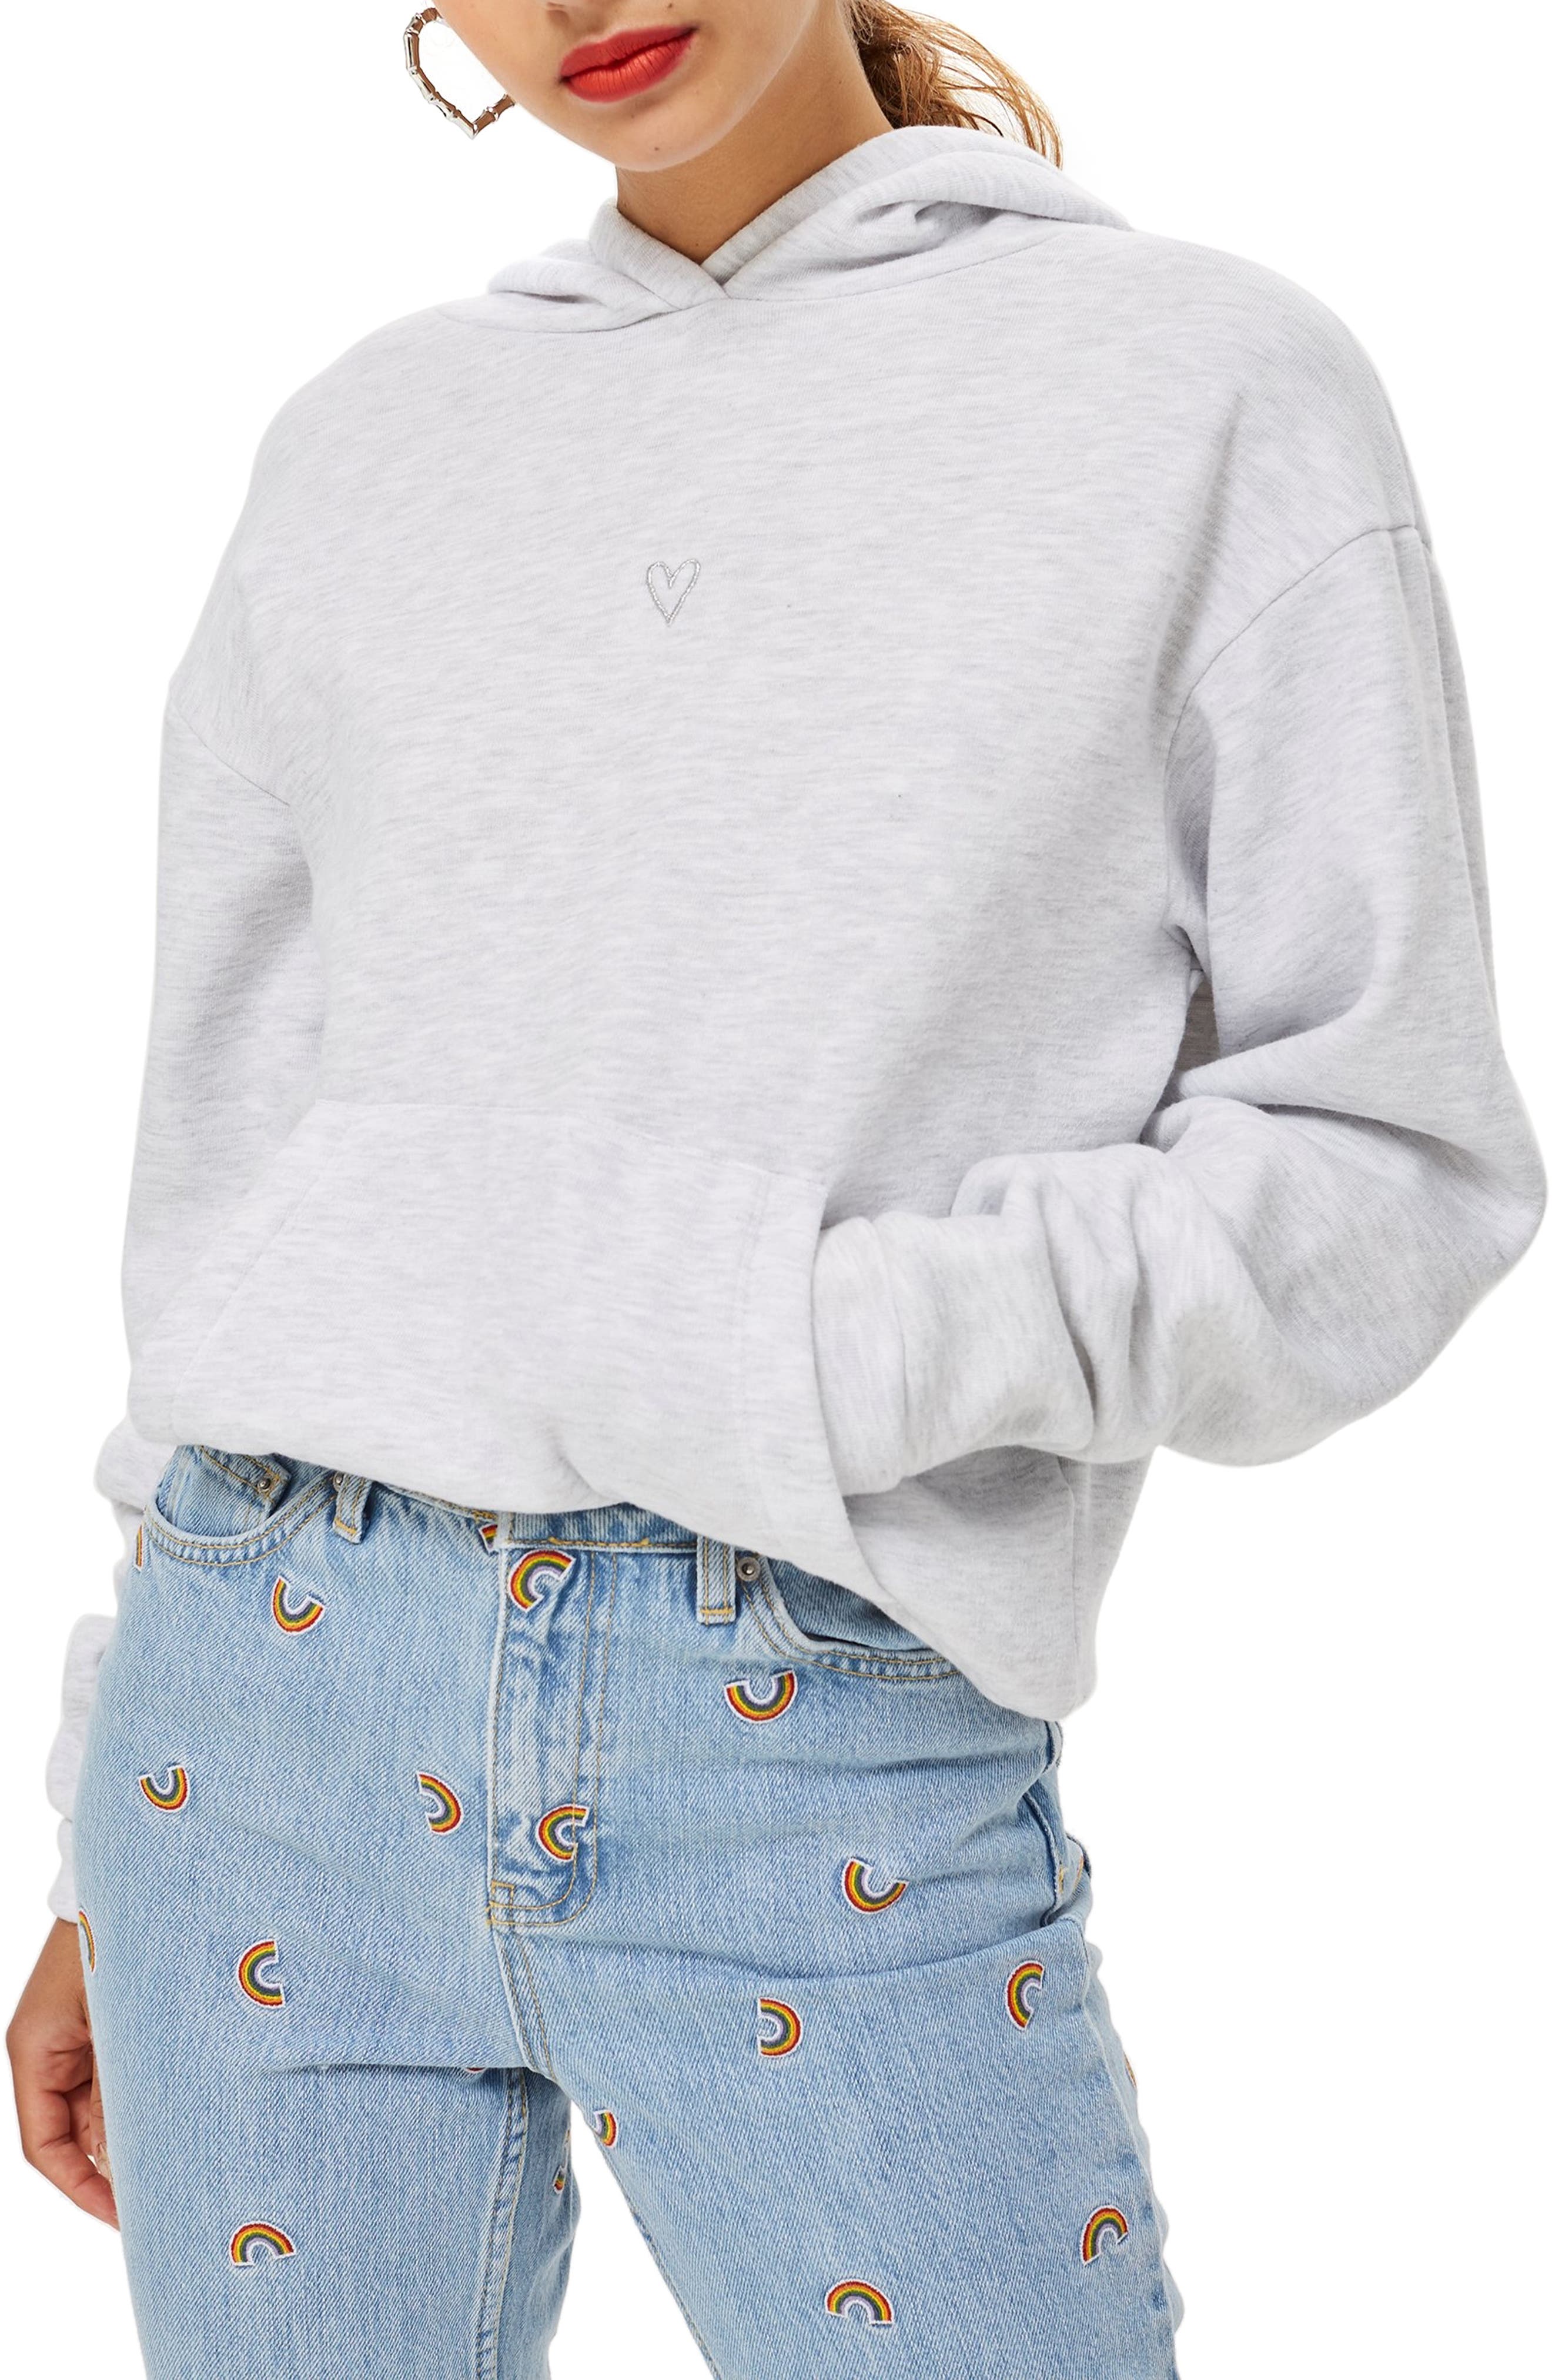 topshop grey sweatshirt